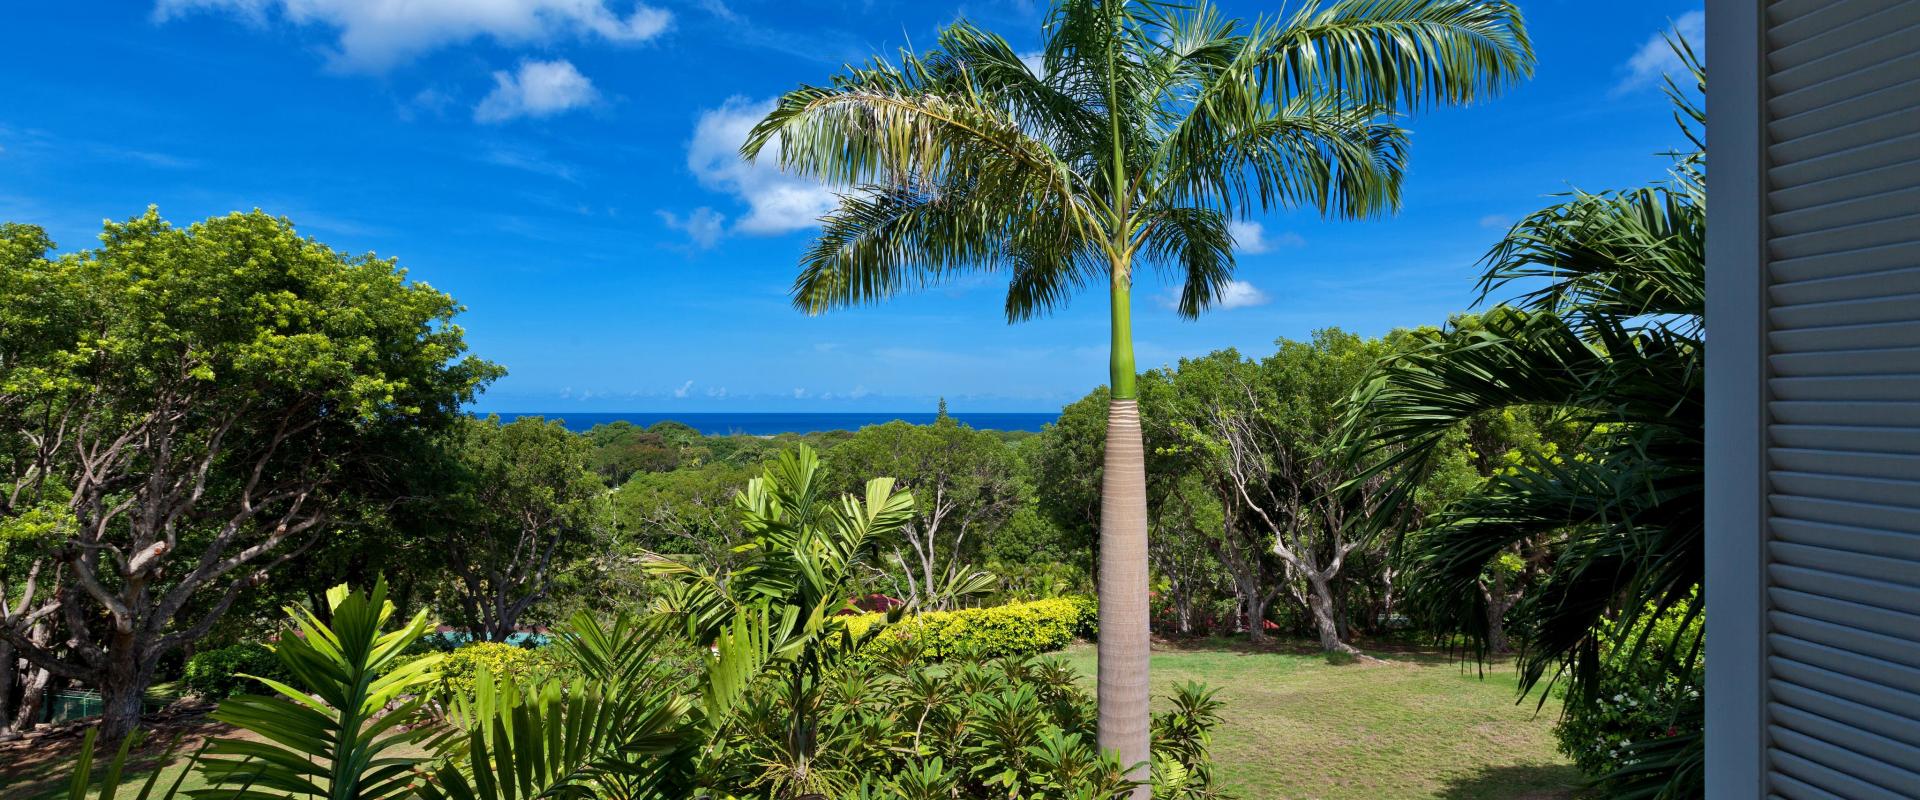 Barbados Holiday Rental Halle Rose Sandy Lane Gardens